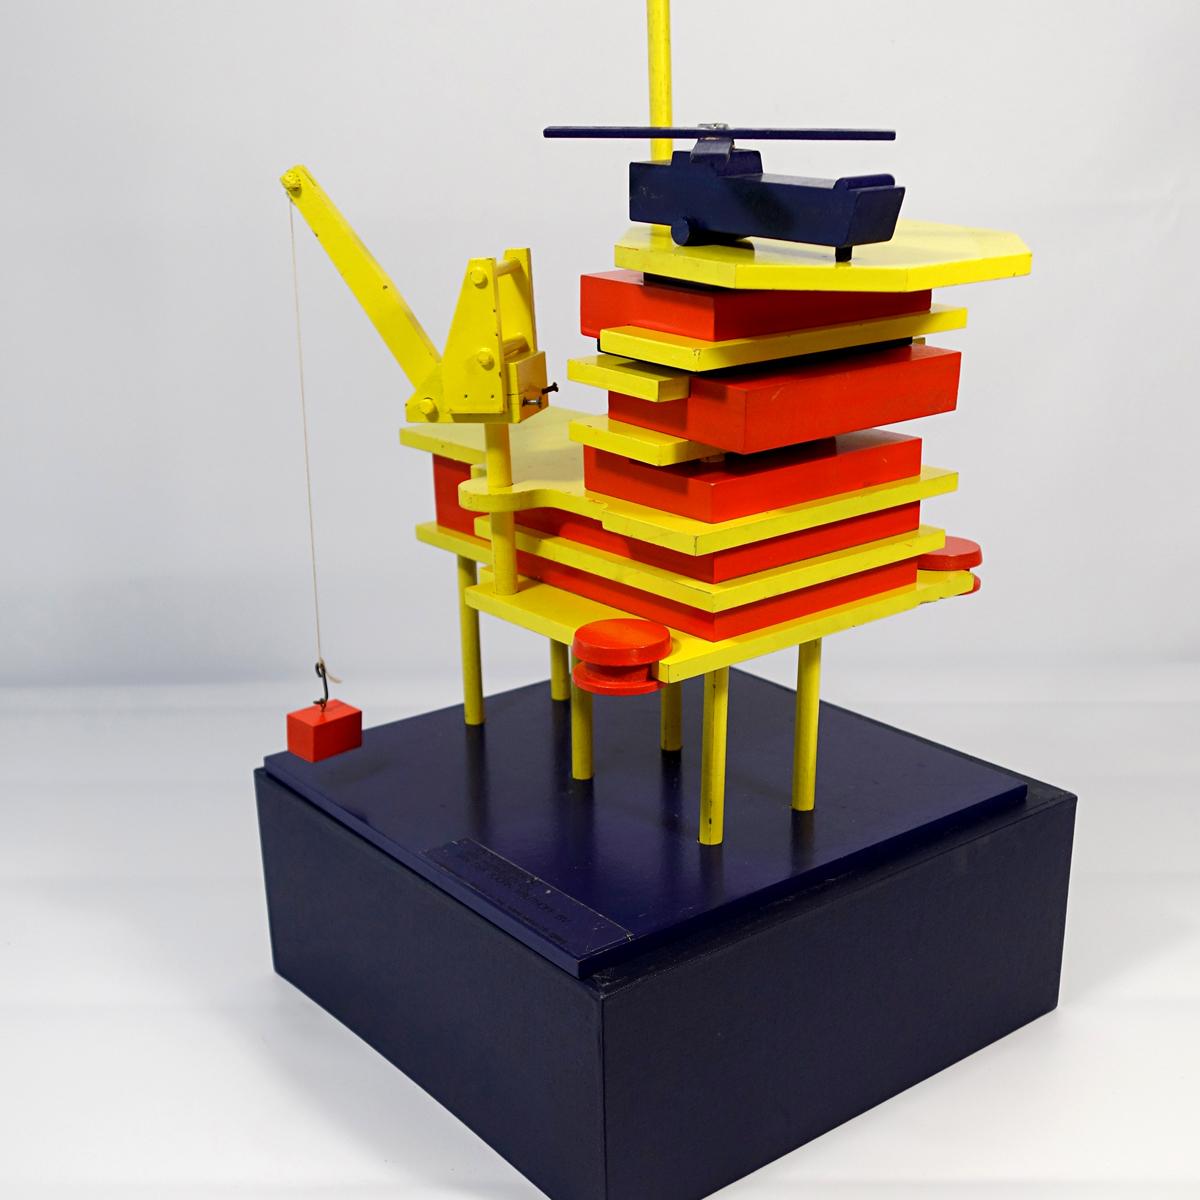 Modell einer Offshore-Förderplattform mit sechs Pfählen
Dieses Do-it-yourself-Set, bestehend aus einer Bohrinsel, einem Schiff mit Ladung und einem Hubschrauber, ist ein echtes Einzelstück.
Es wurde vom niederländischen Architekturbüro Van